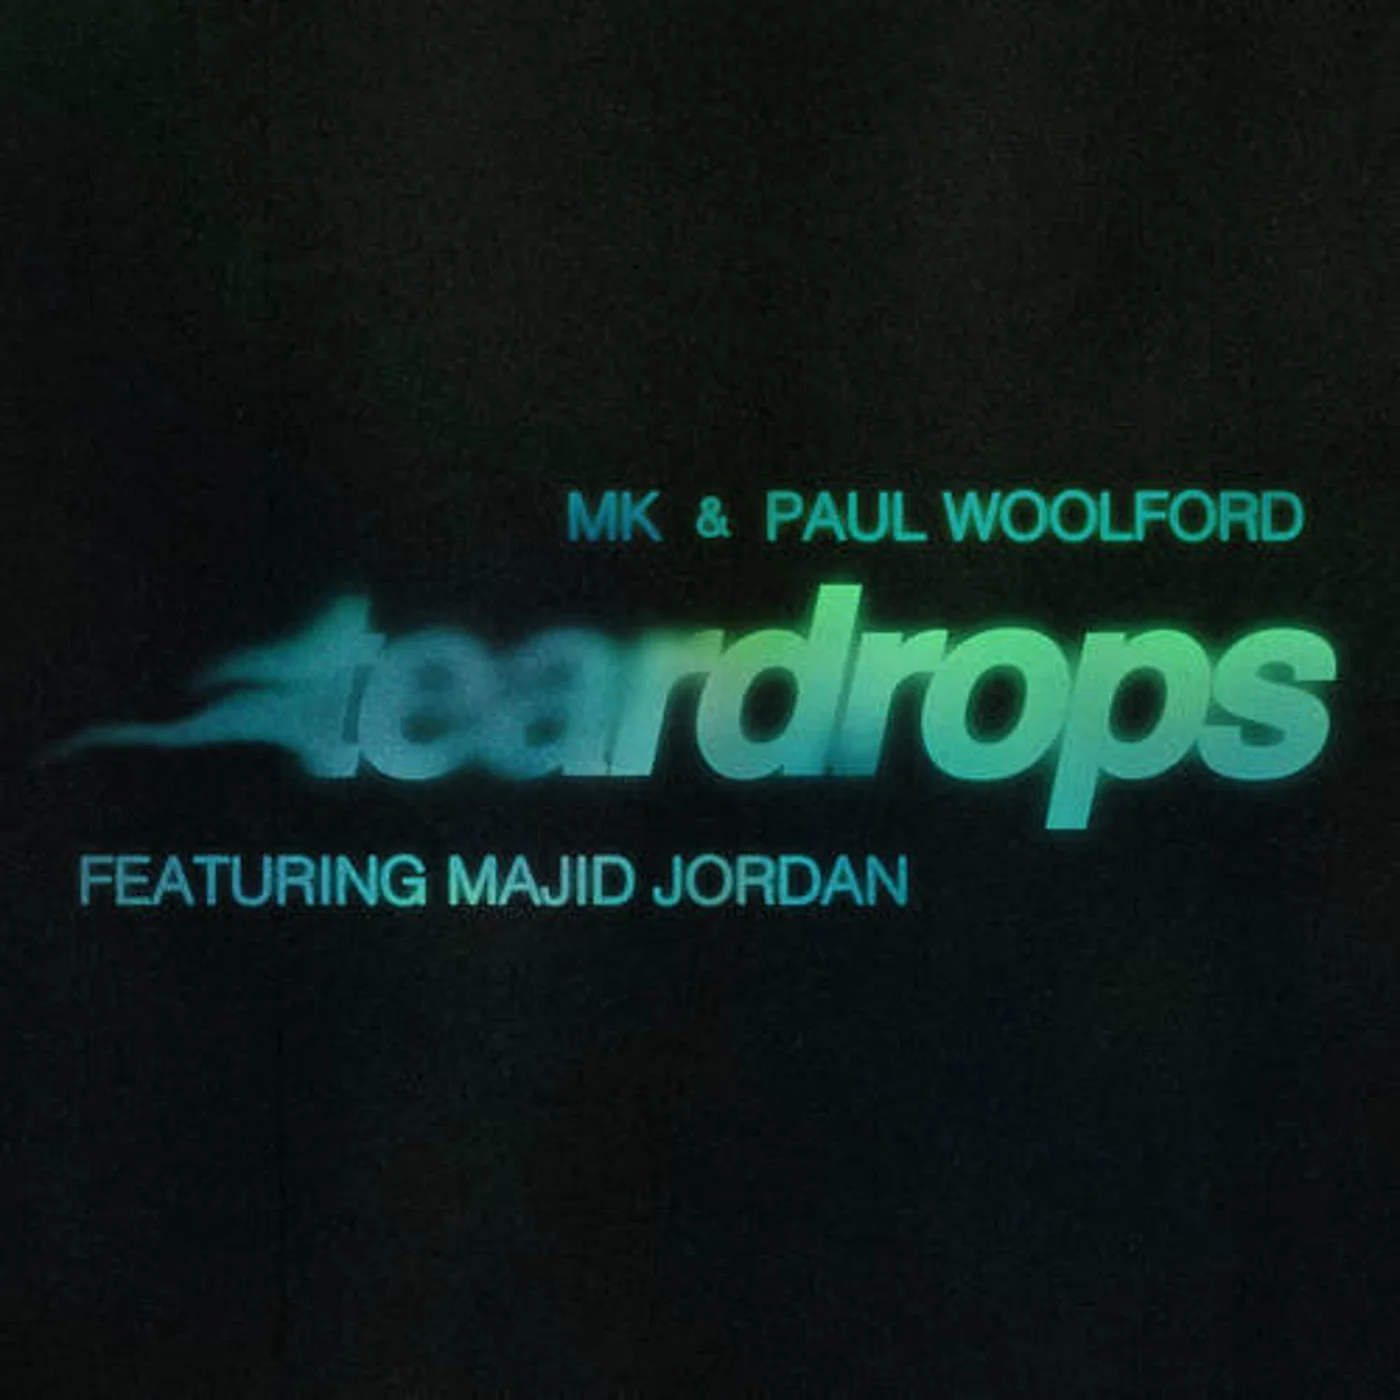 MK & Paul Woolford ft. featuring Majid Jordan Teardrops cover artwork